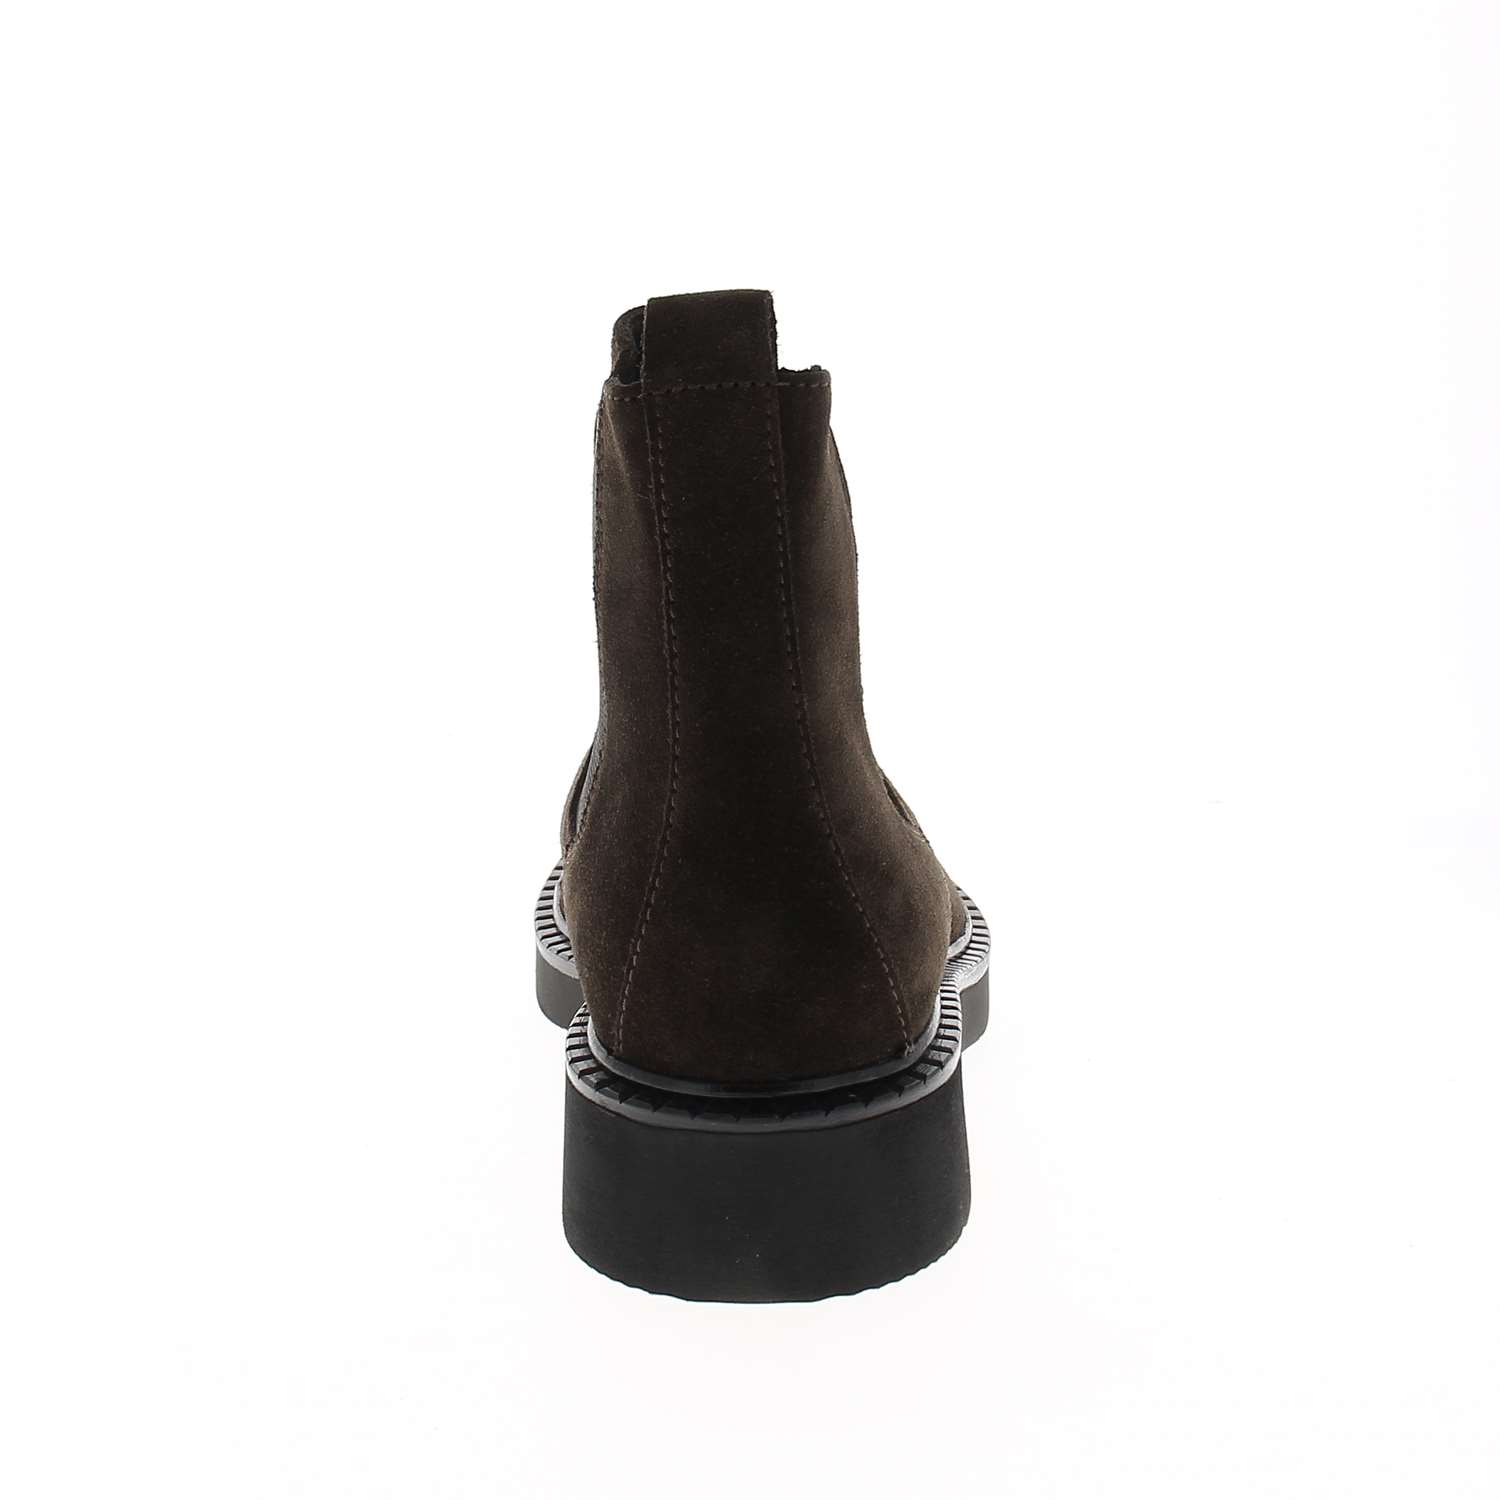 04 - APOMY - XAPI - Boots et bottines - Cuir / textile